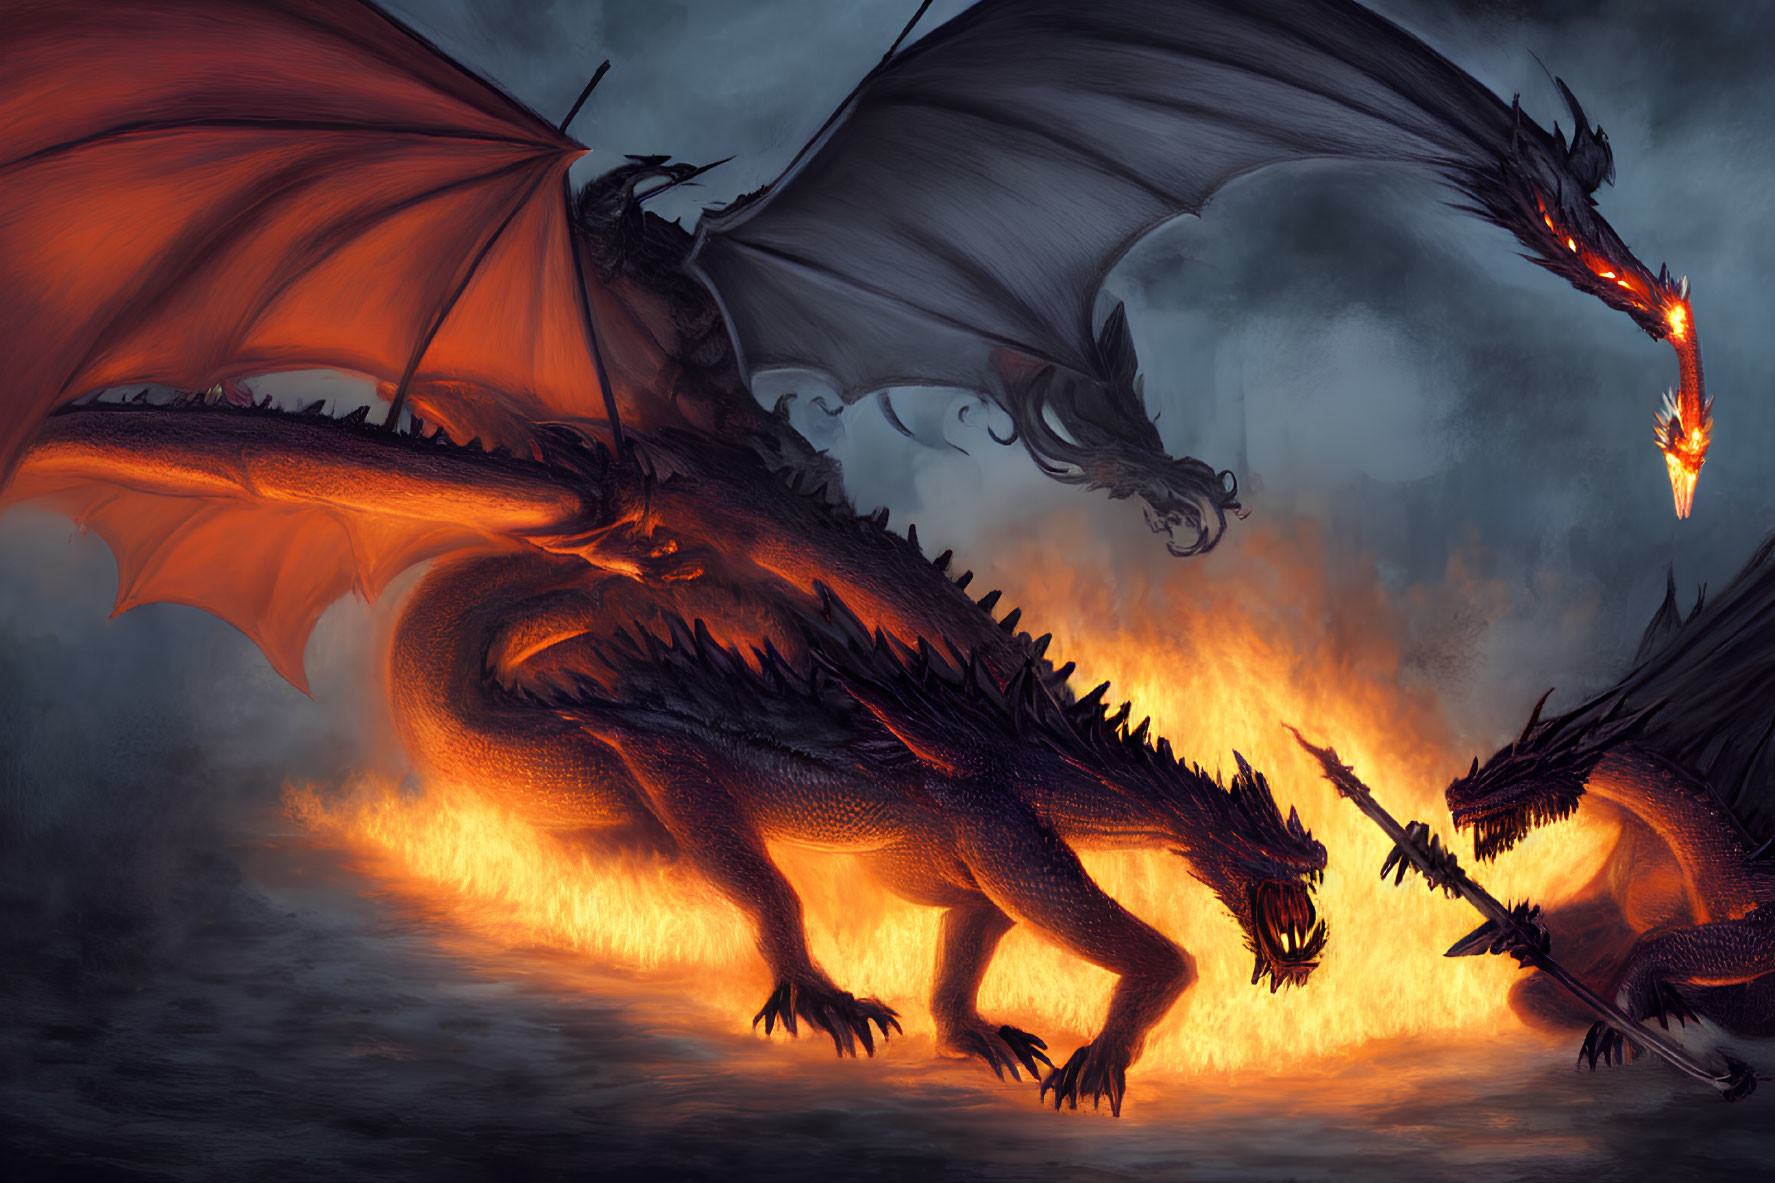 Fiery battle between two fierce dragons in dark skies